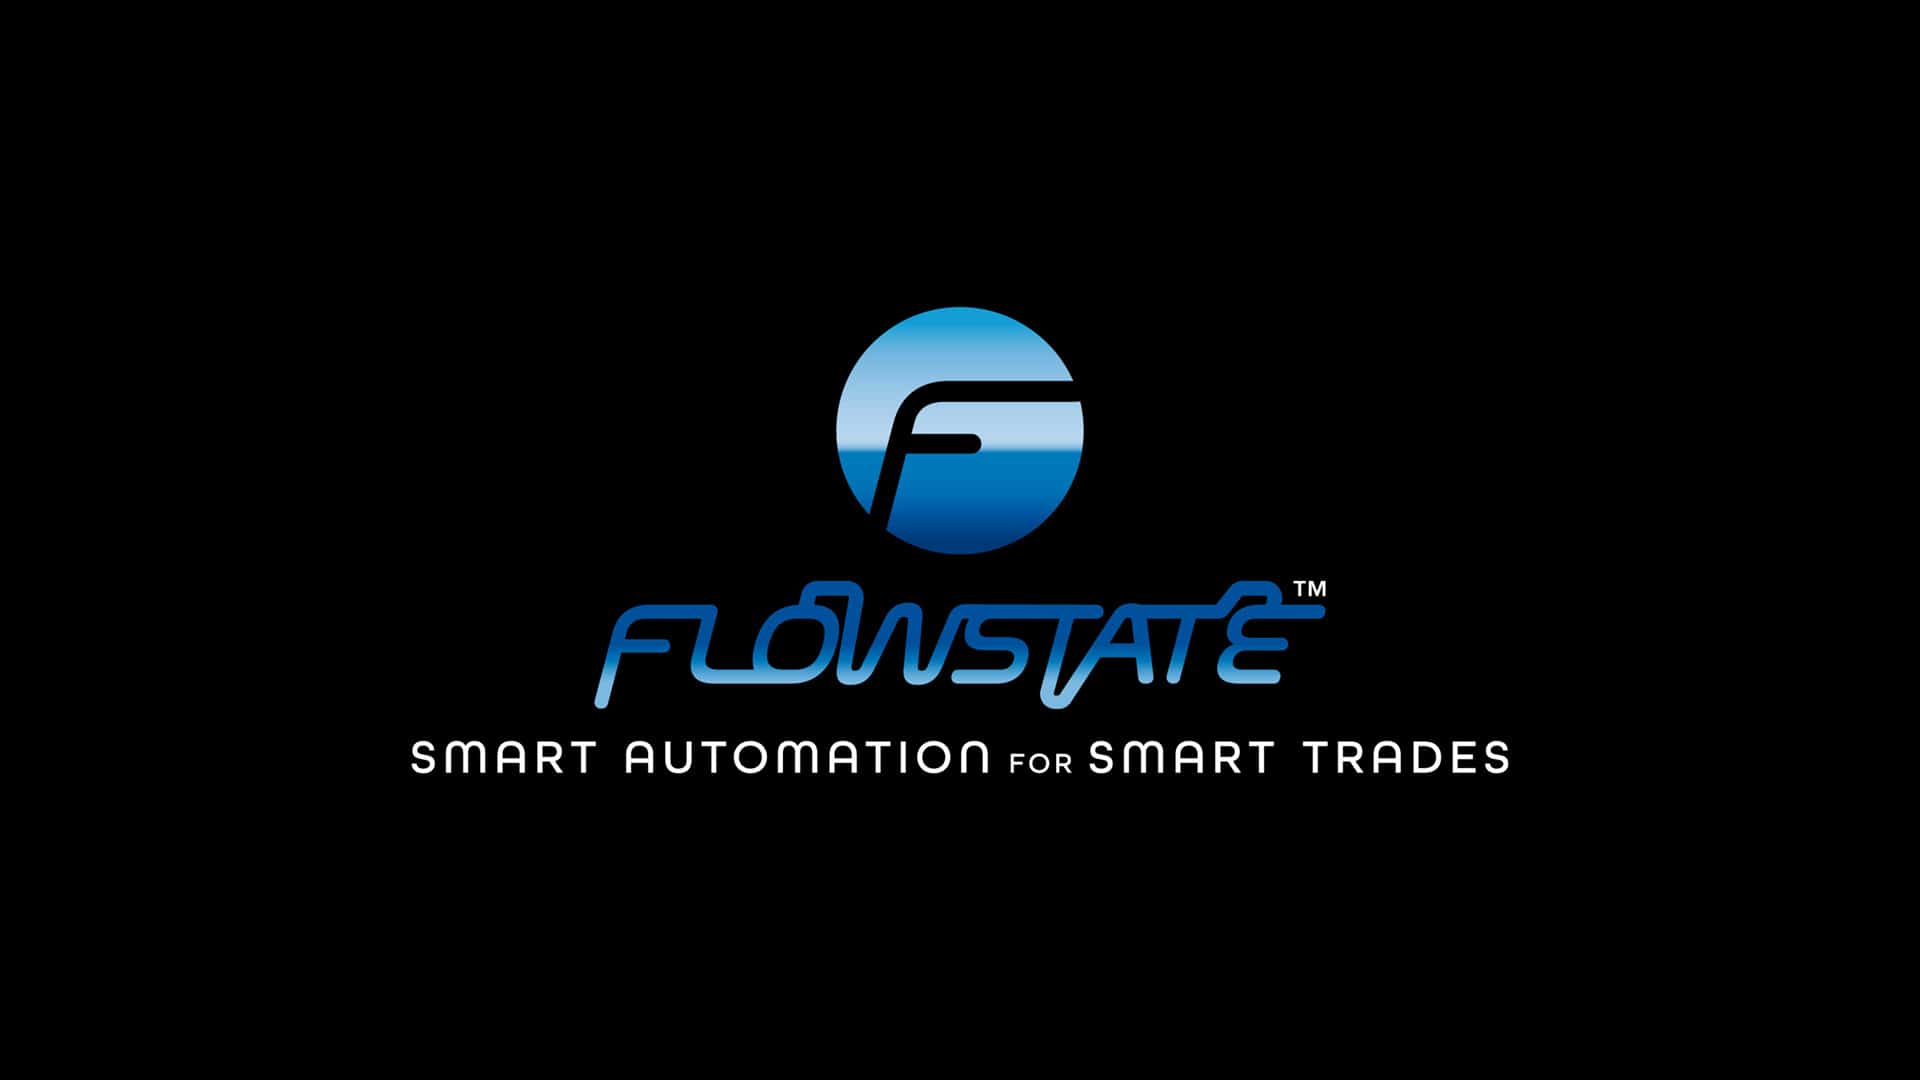 Flowstate main logo image